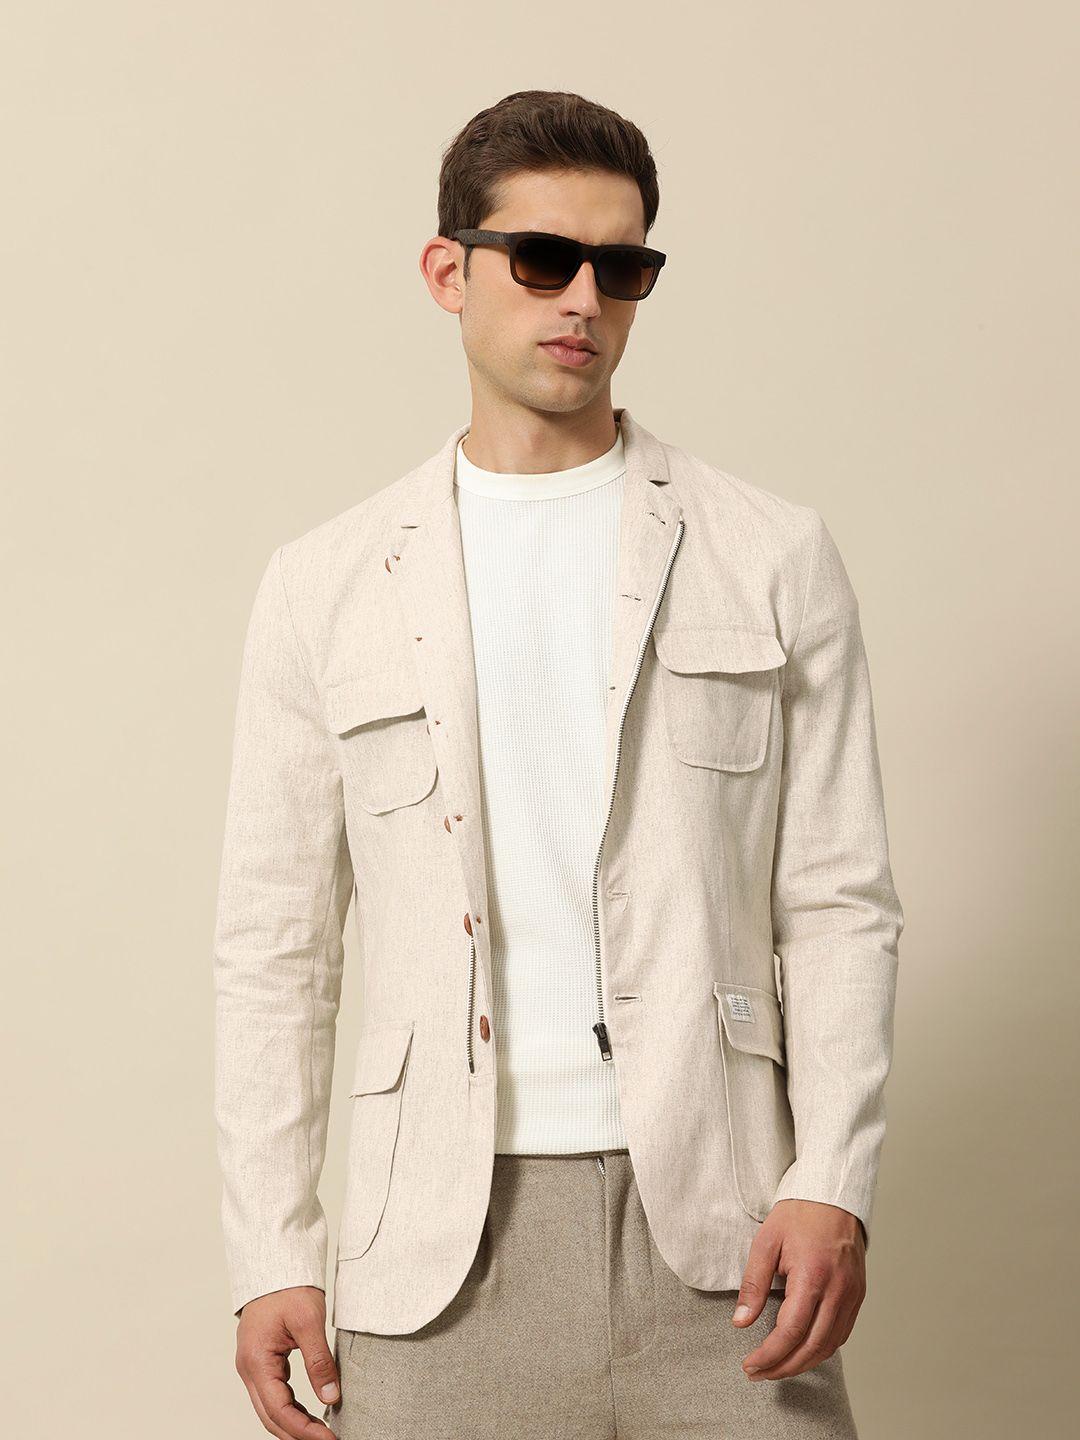 mr-bowerbird-built-up-collar-full-zipper-tailored-fit-casual-blazers